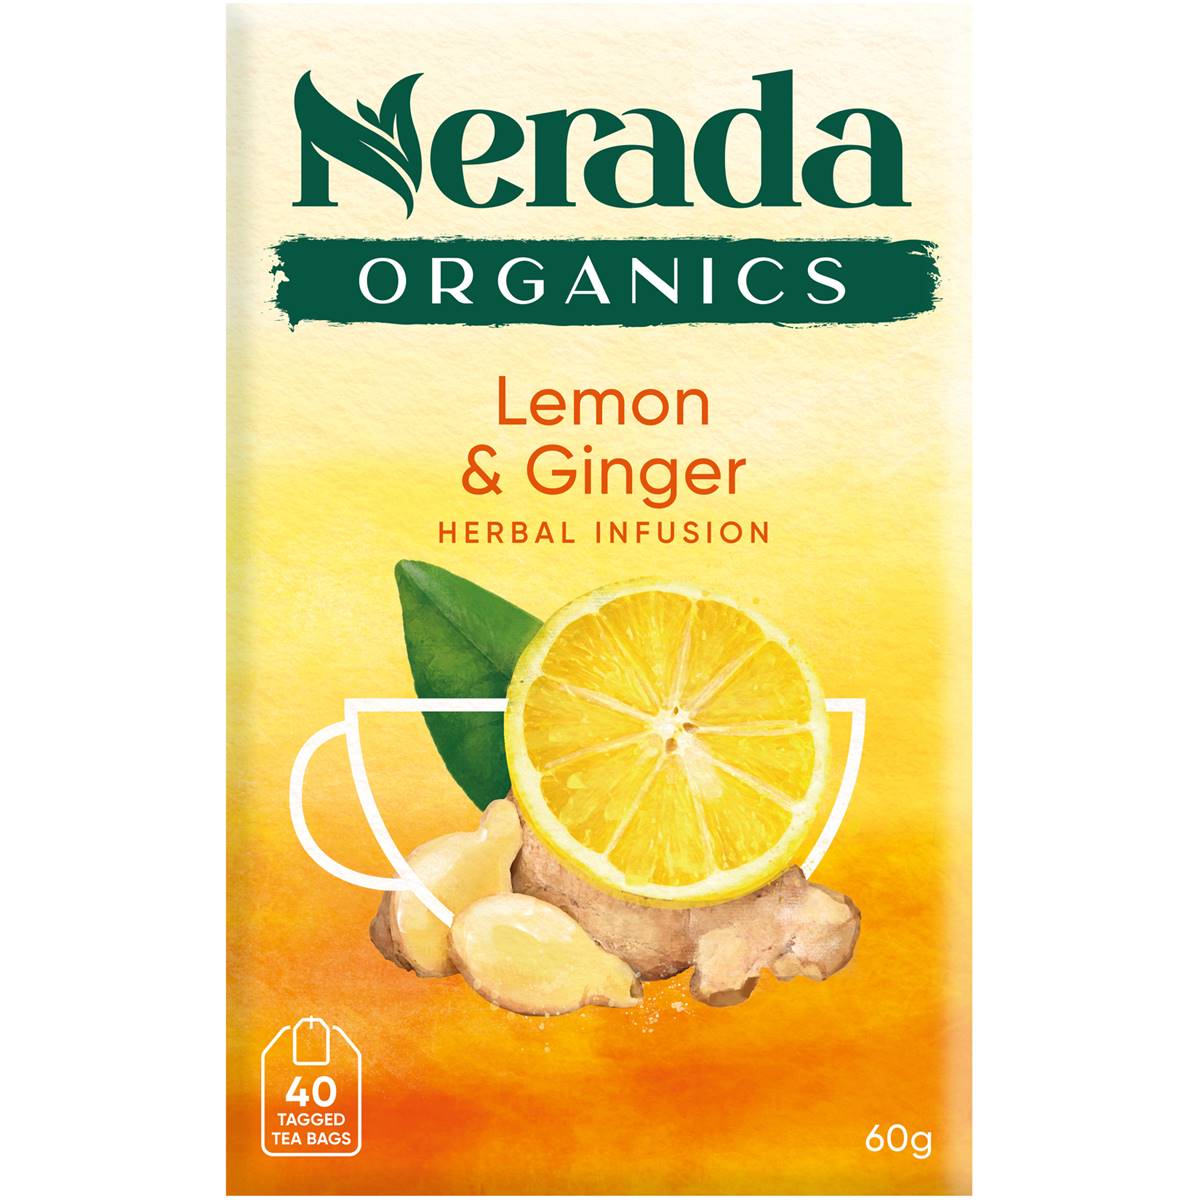 Calories in Nerada Organic Lemon & Ginger Tea Bags